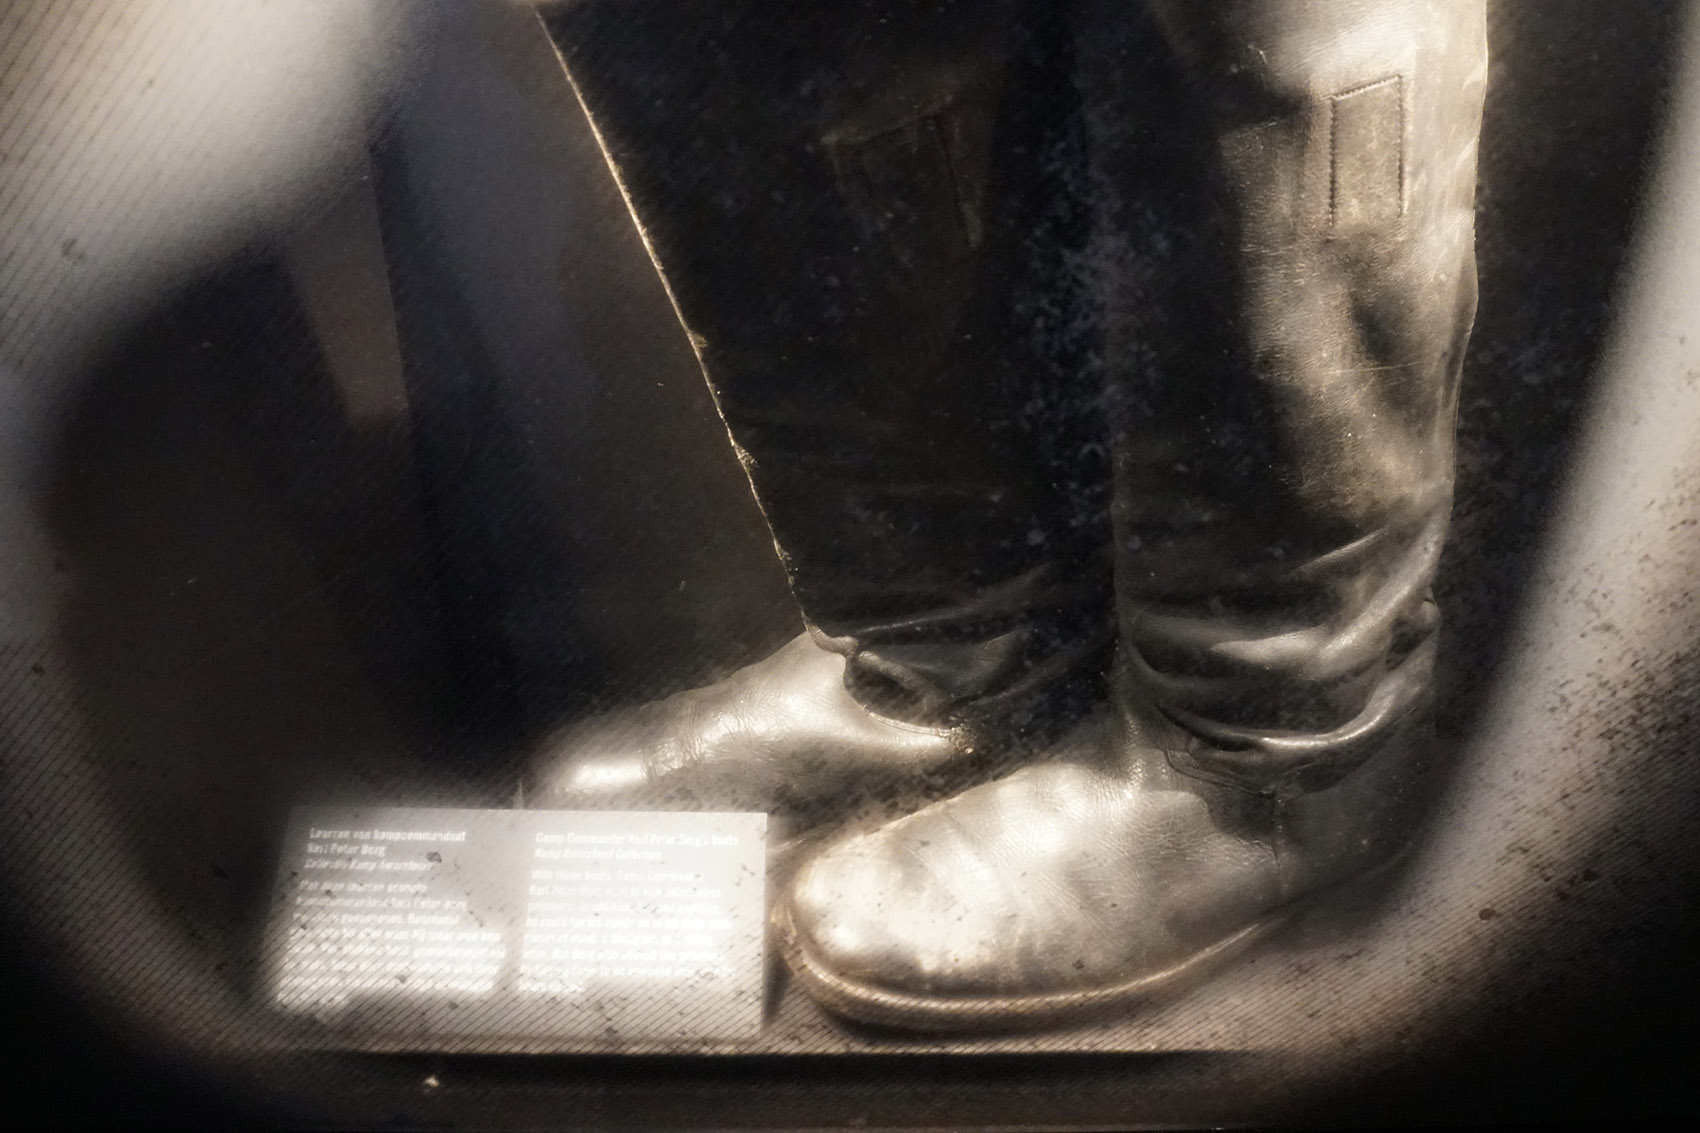 阿默斯福特集中营国家纪念馆永久展览，荷兰/讲述故事，反思战争-29